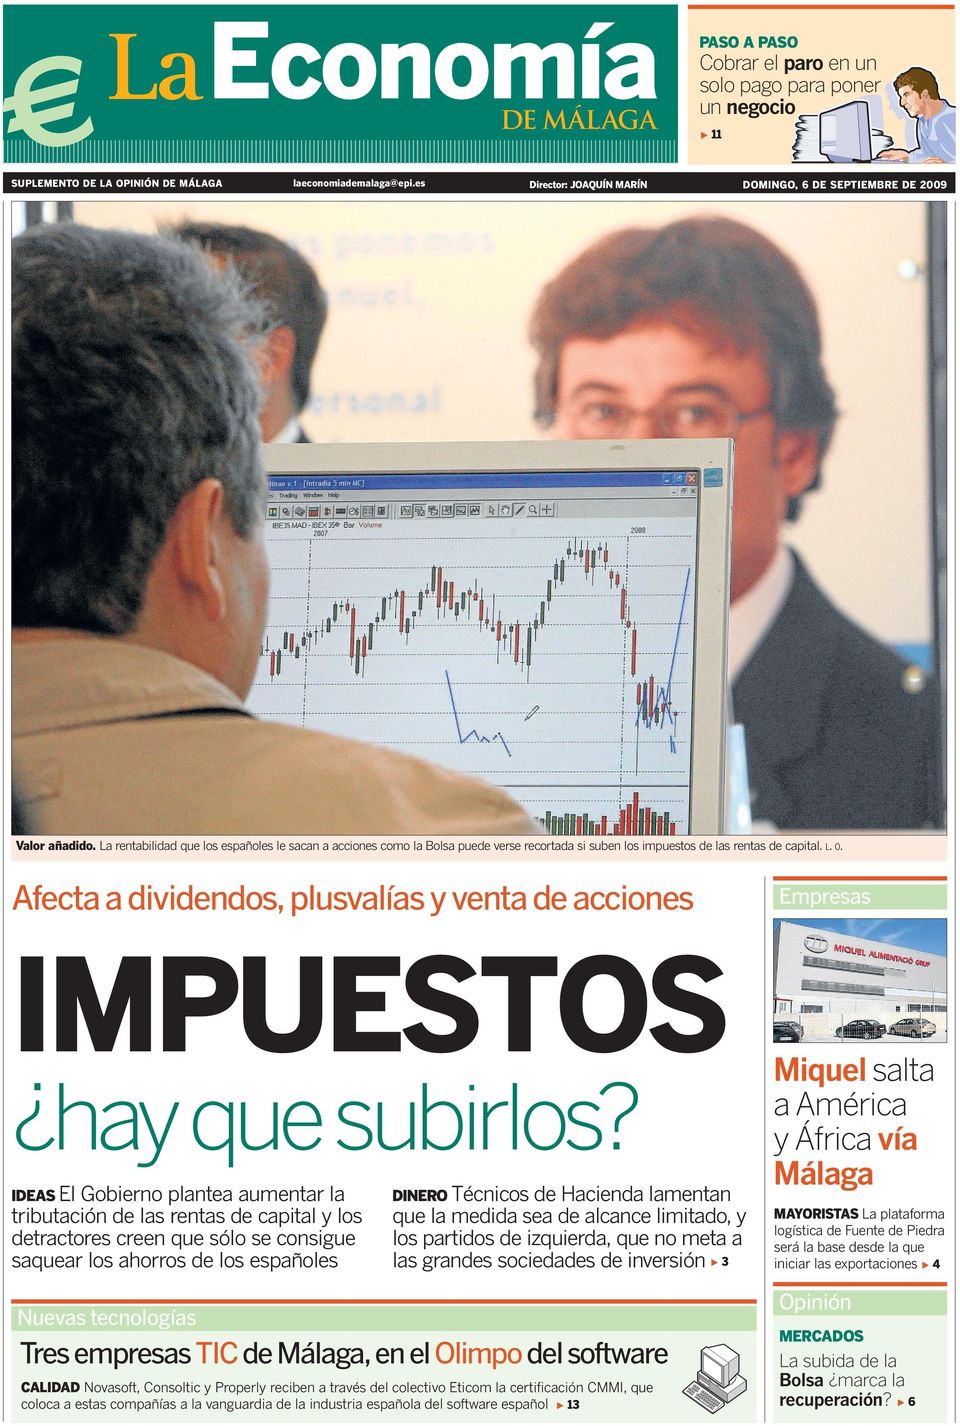 La rentabilidad que los españoles le sacan a acciones como la Bolsa puede verse recortada si suben los impuestos de las rentas de capital. L. O.